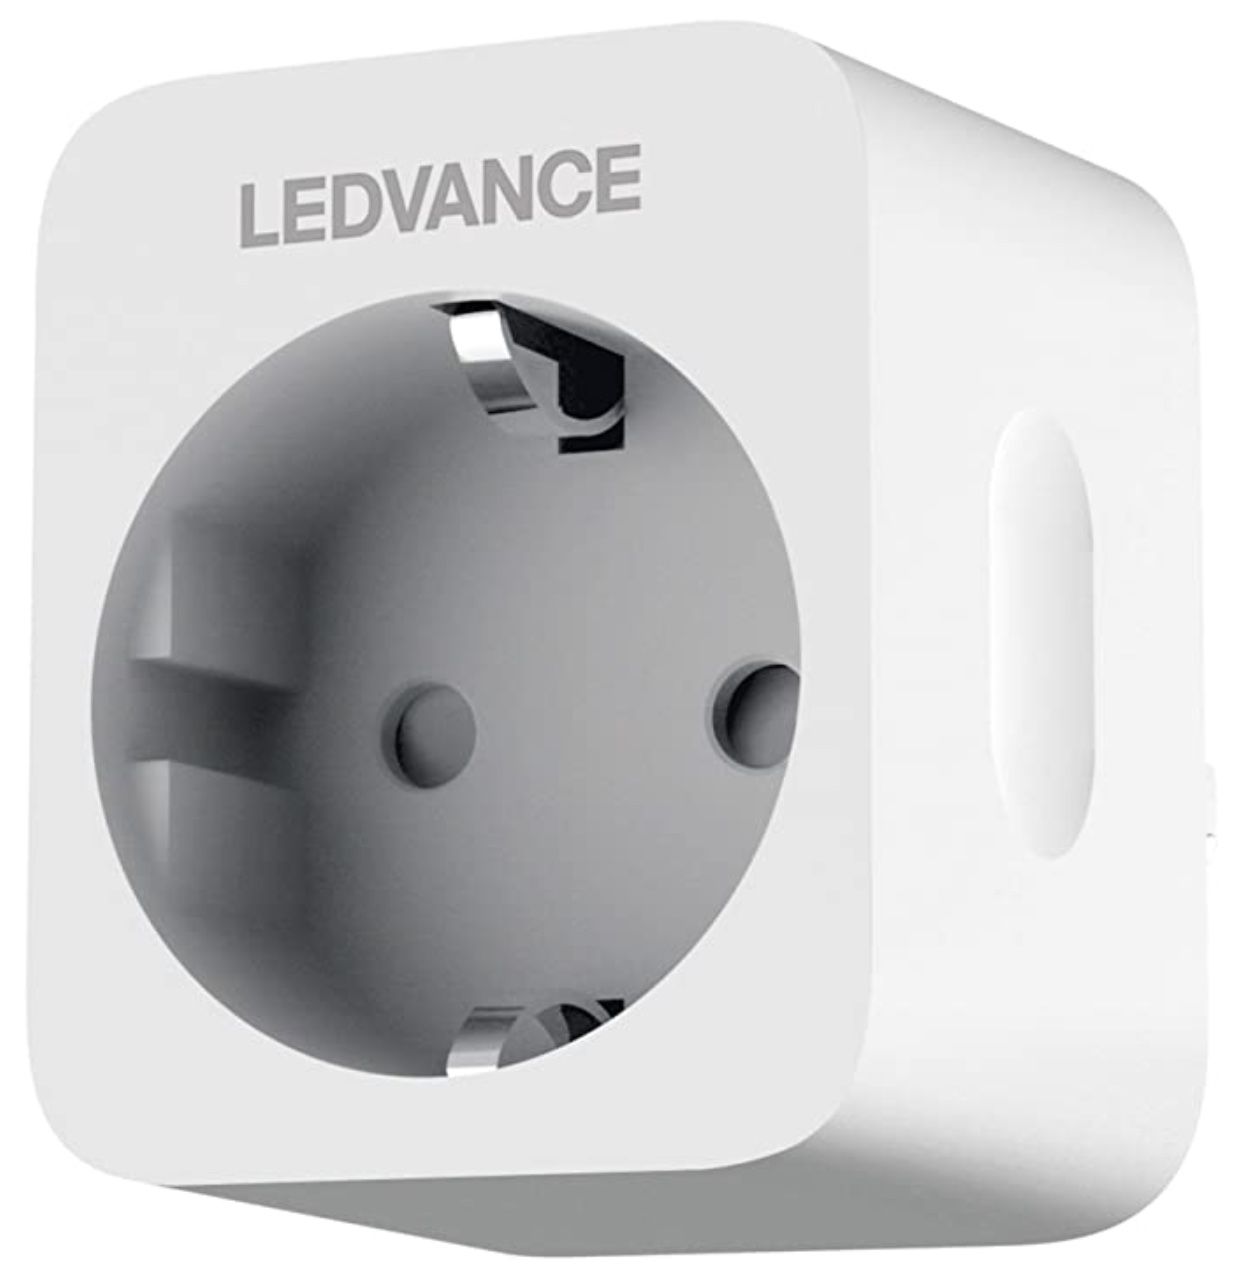 Ledvance Smart+ Plug WLAN Steckdosen für 9,59€ (statt 15€)   Prime